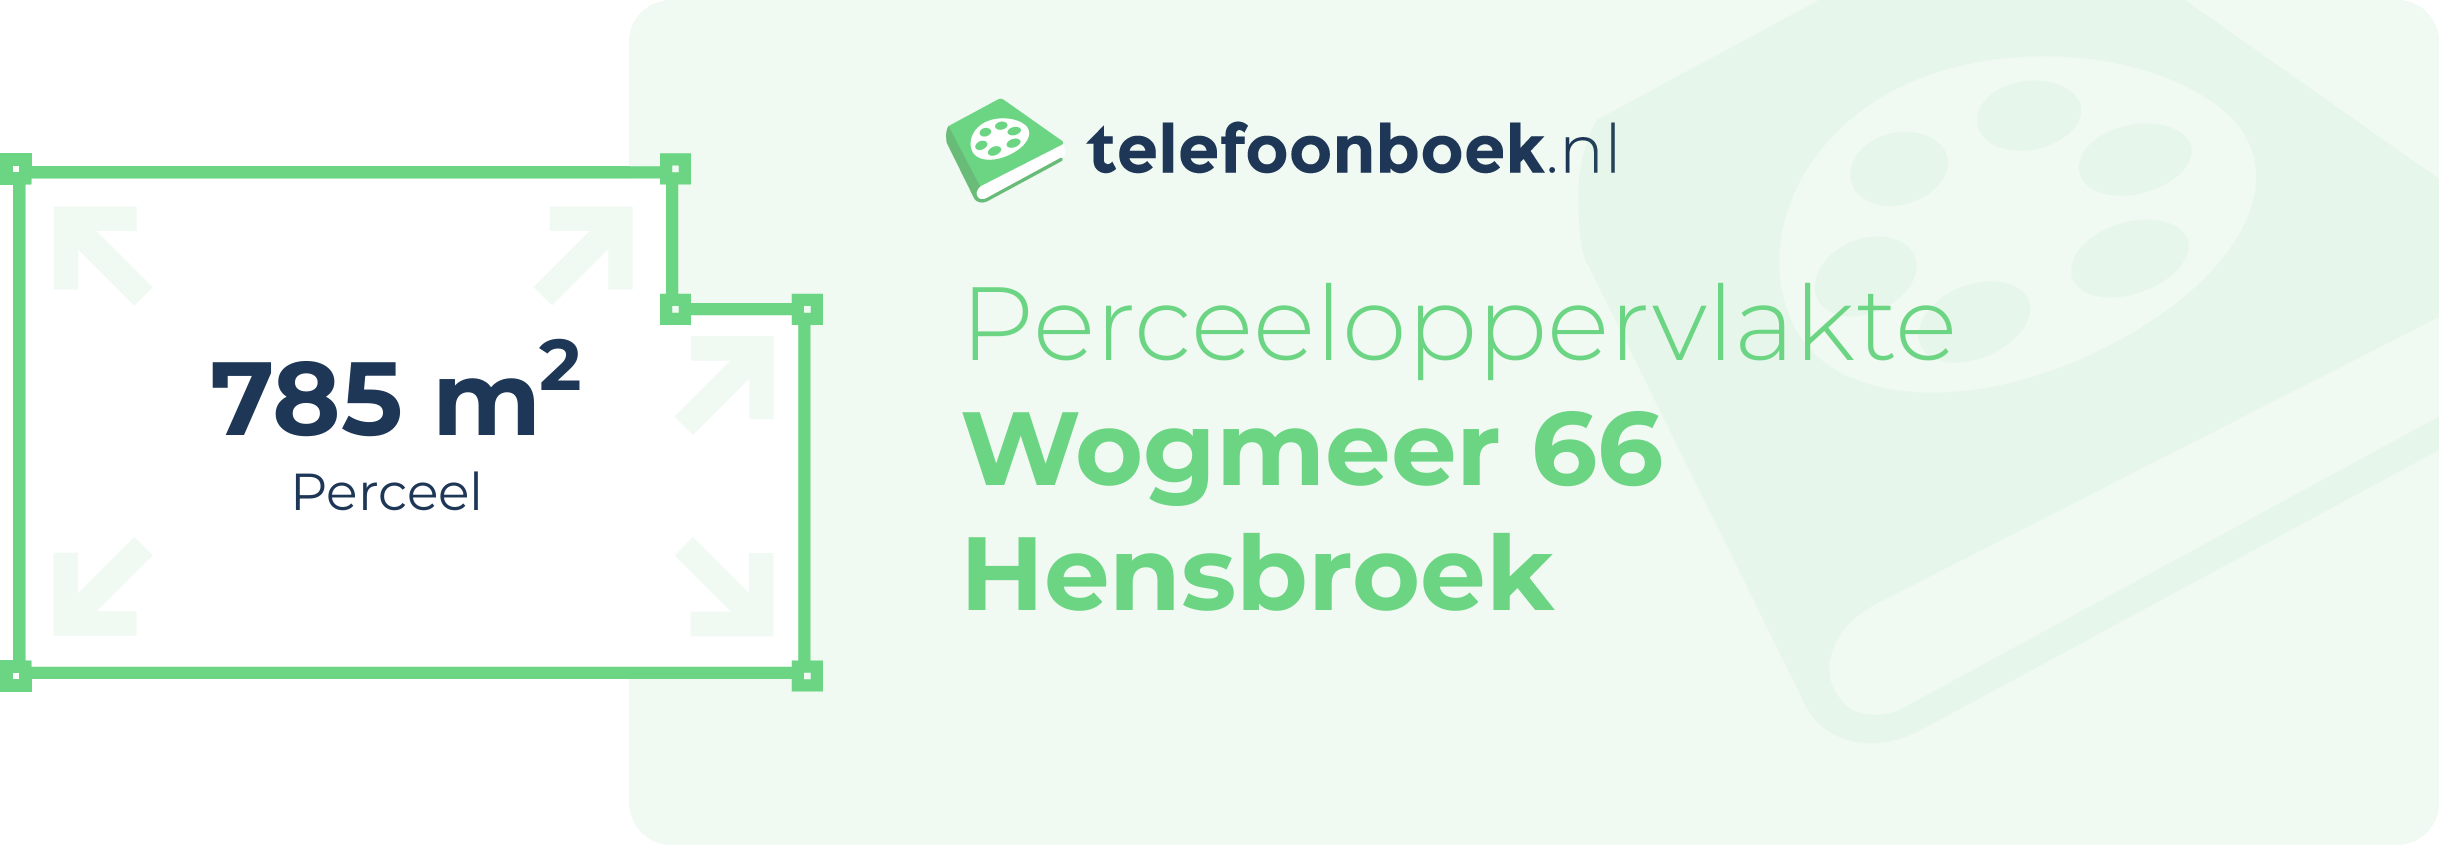 Perceeloppervlakte Wogmeer 66 Hensbroek